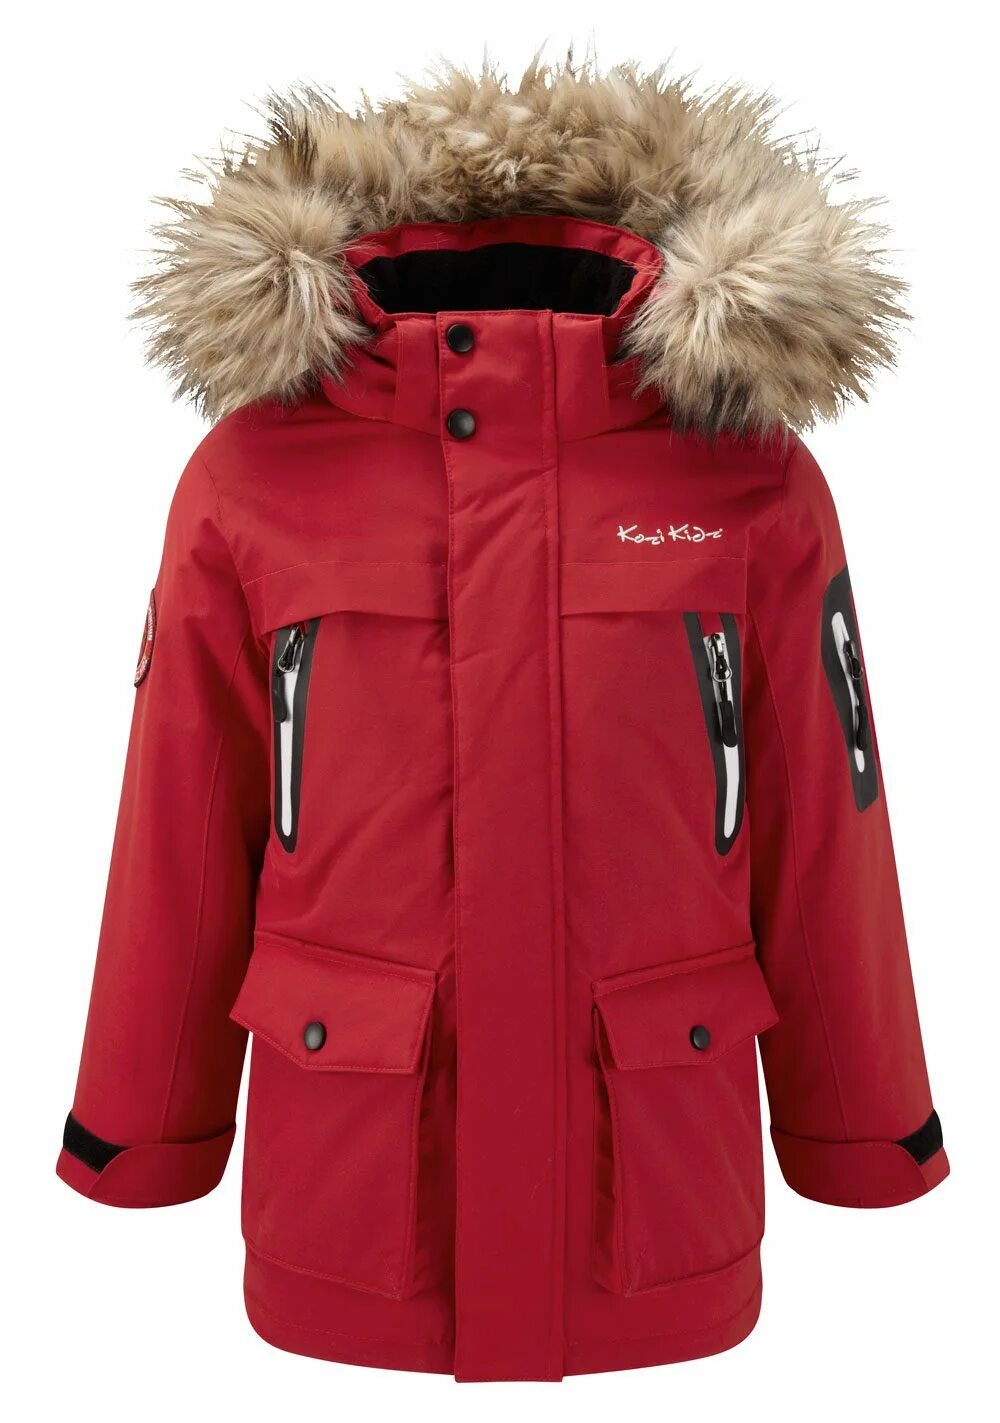 Производители алясок. Куртка Аляска женская 2020. Canadian Alaska куртка. Куртка Аляска женская зимняя. Аляска куртка Modis детская.